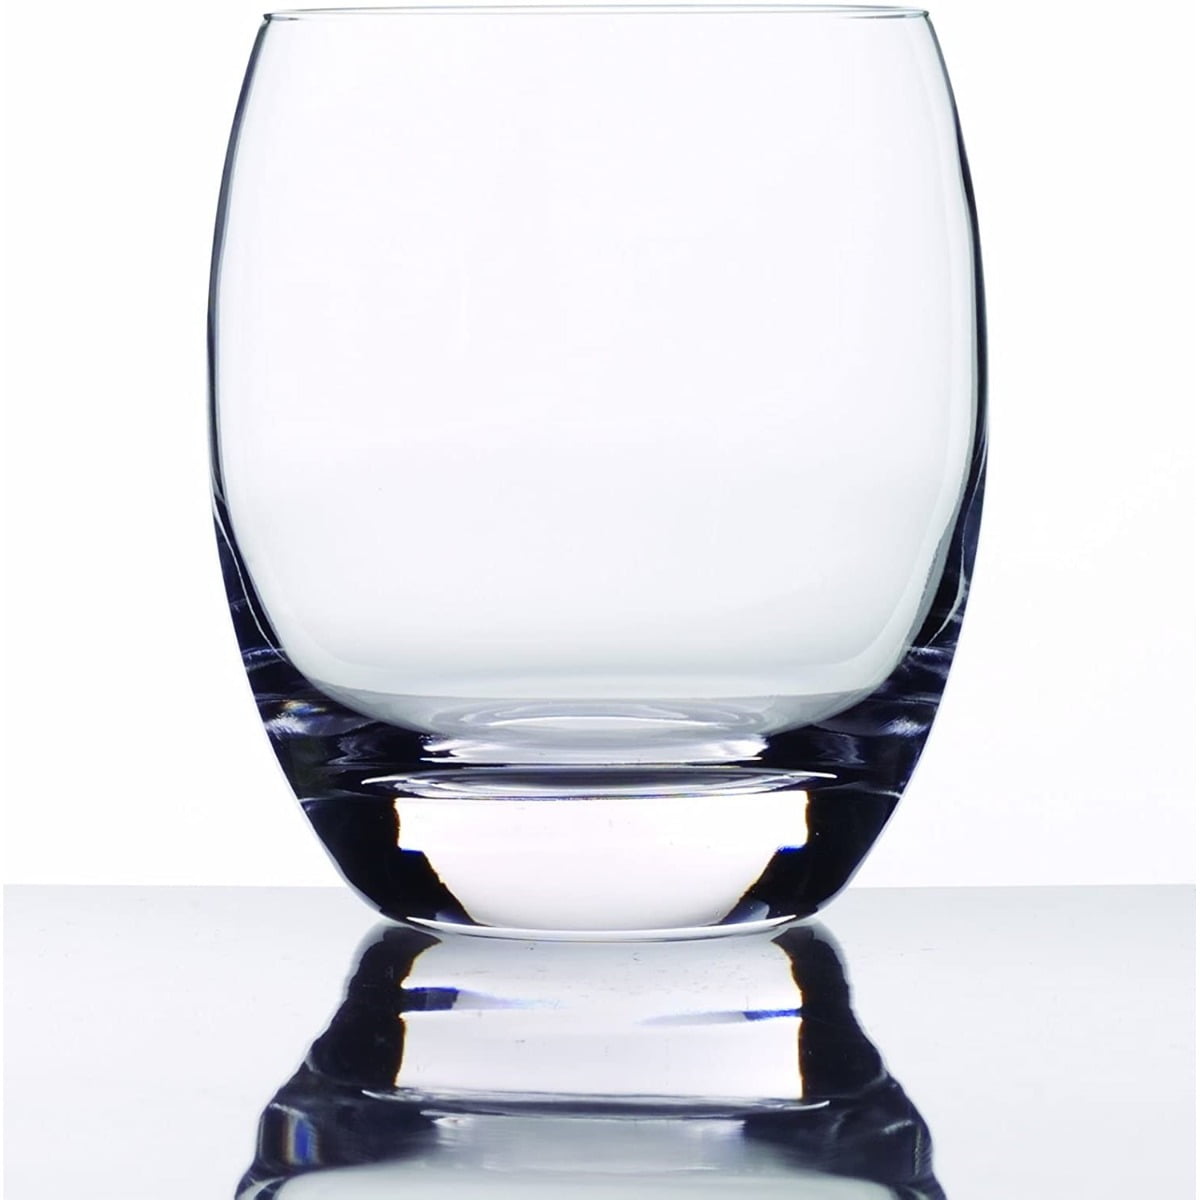 Crescendo Glassware Collection